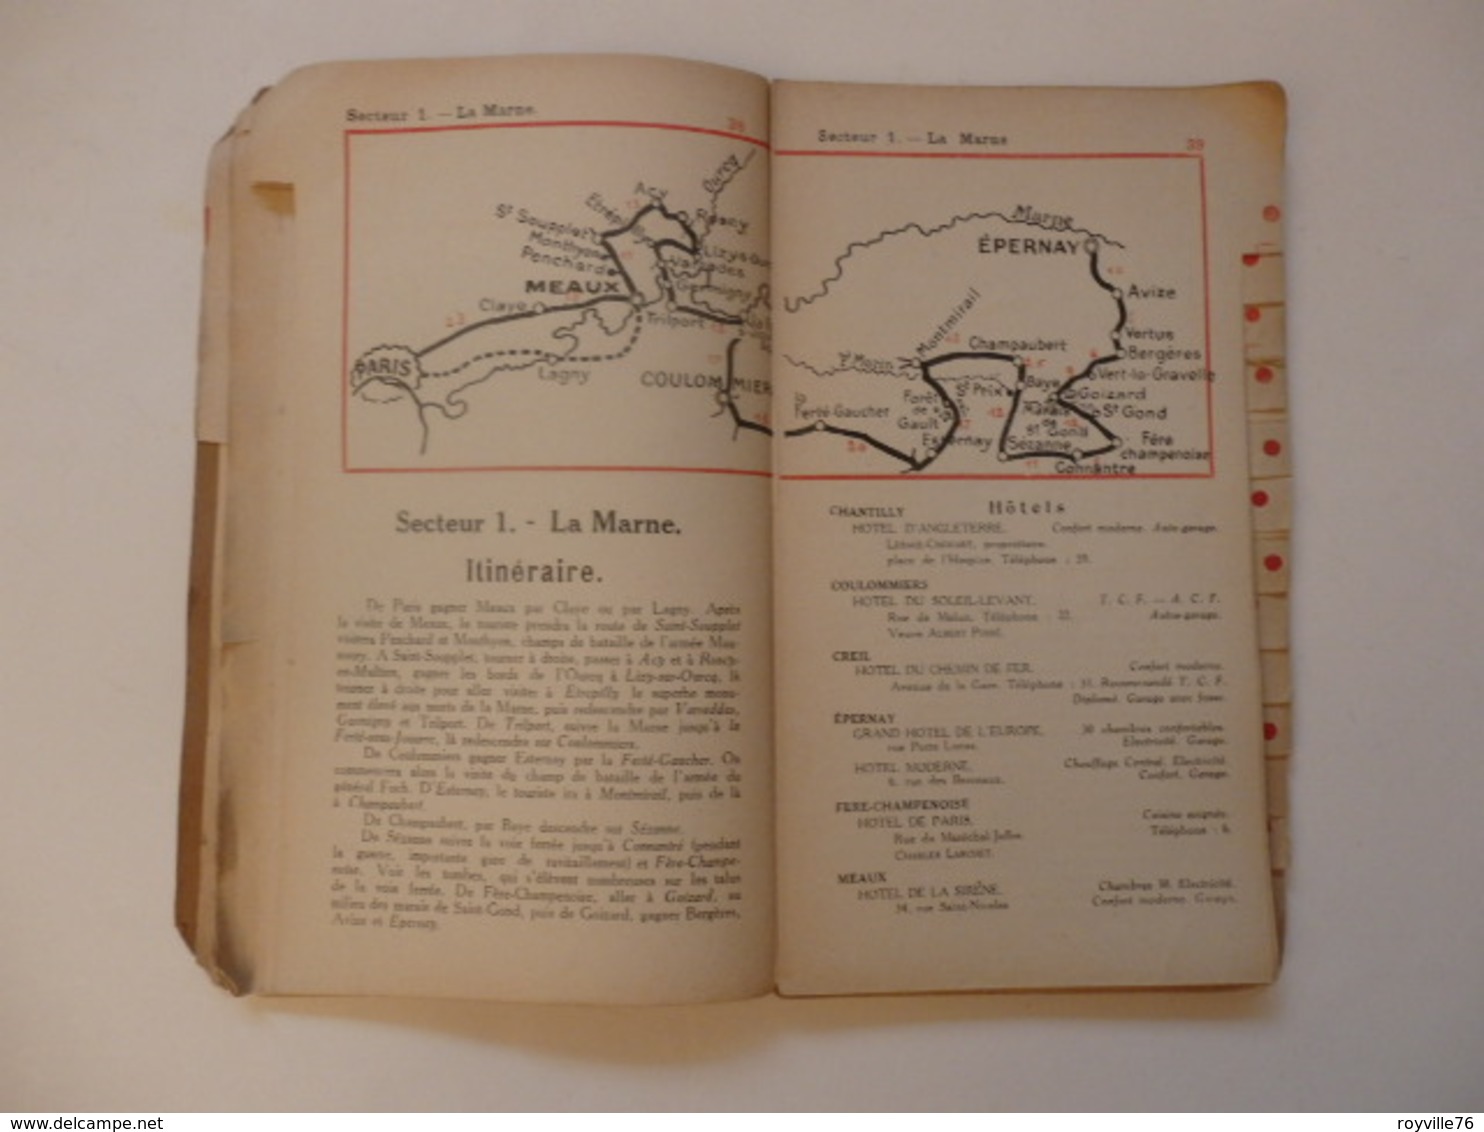 Livre-guide de l'autmobiliste, le pneu Goodrich et les Régions de guerre de 159 pages